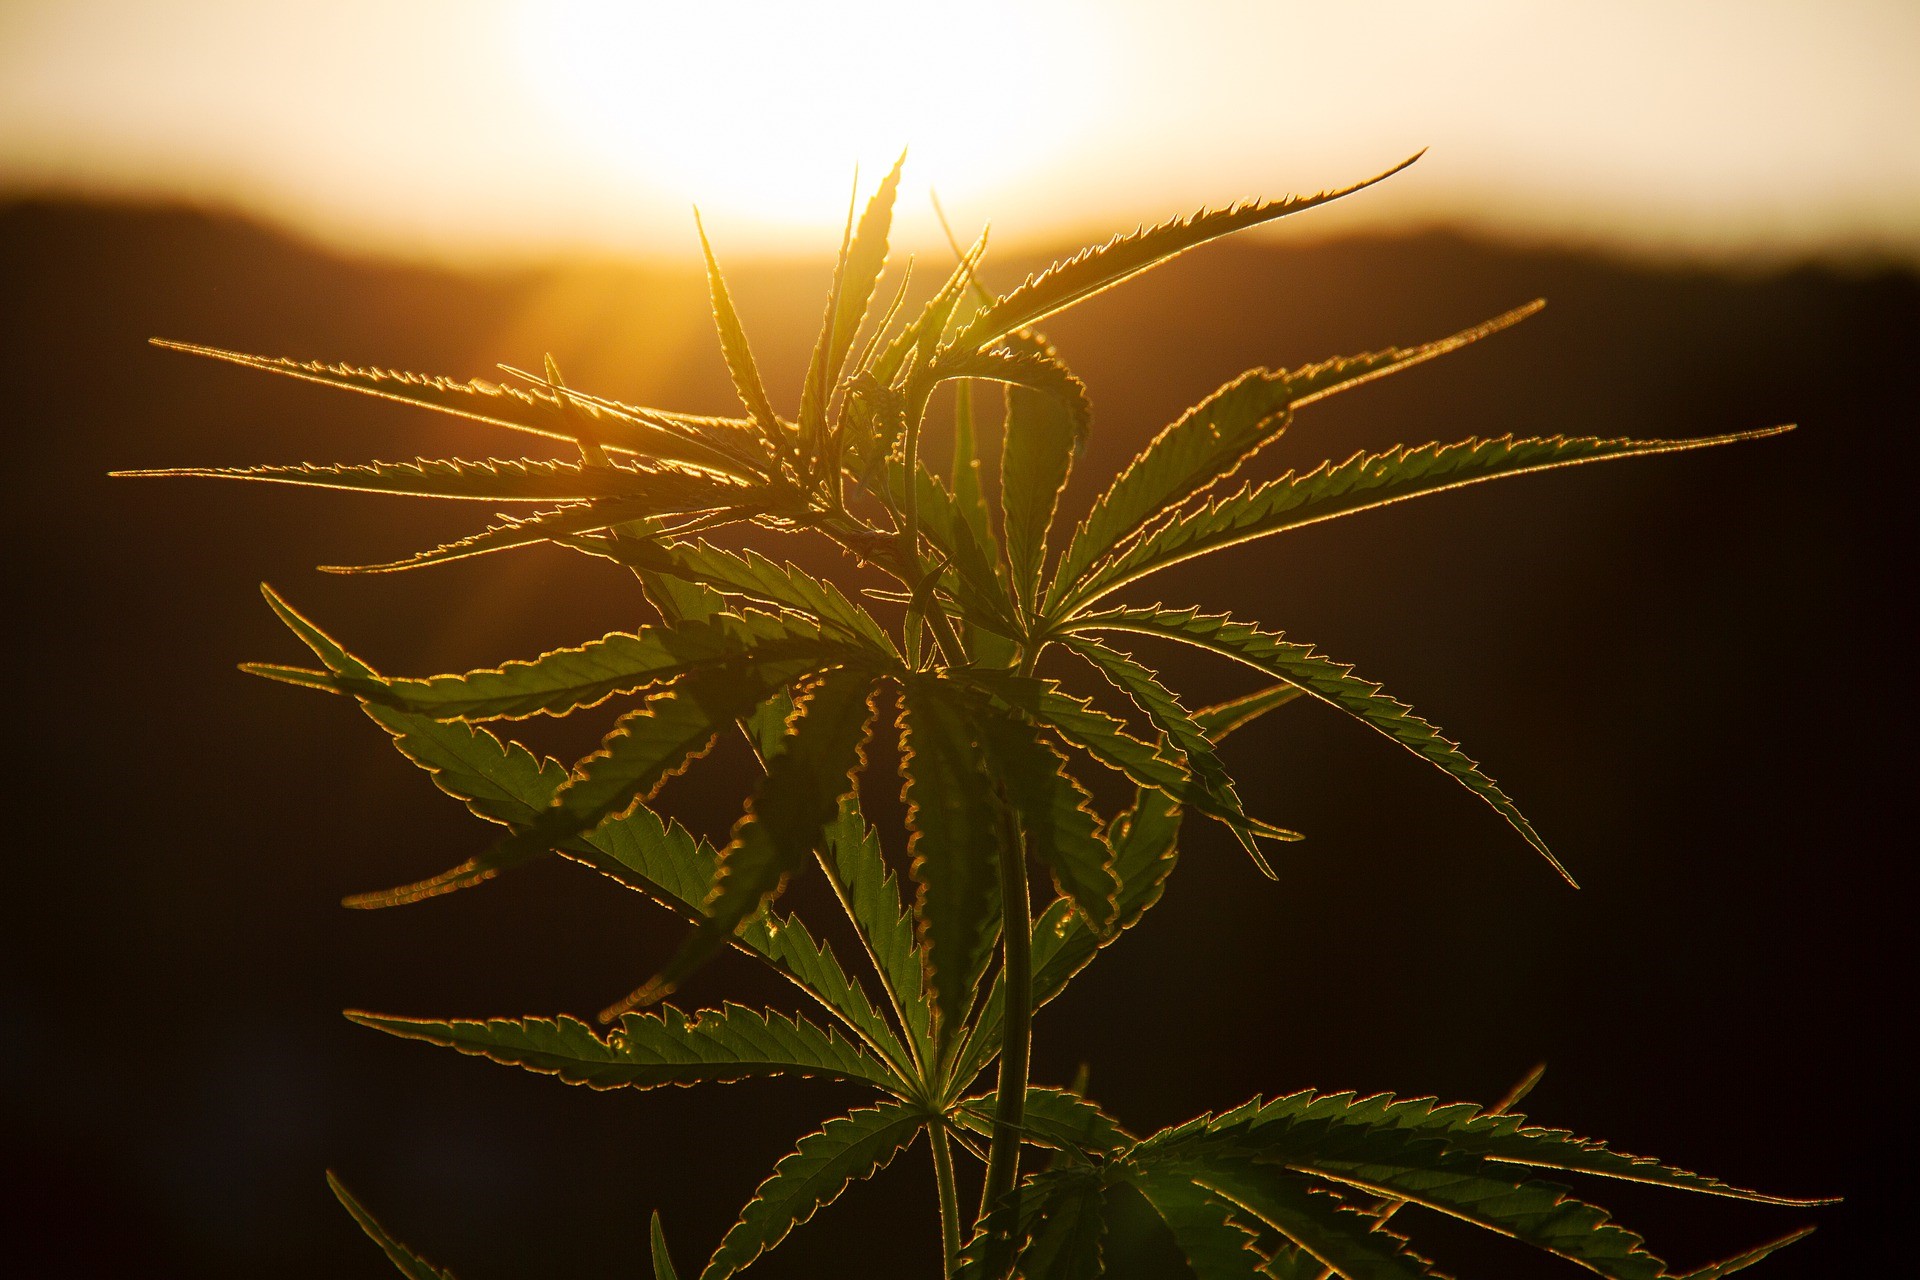 Roundhill Investments, en ETF-sponsor fokuserad på innovativa tematiska fonder, lanserade idag sin cannabisfond, Roundhill Cannabis ETF (WEED ETF) på Cboe BZX Exchange. WEED ETF strävar efter att ge investerare exponering för cannabissektorn, inklusive amerikanska multi-state-operatörer (”MSOs”).